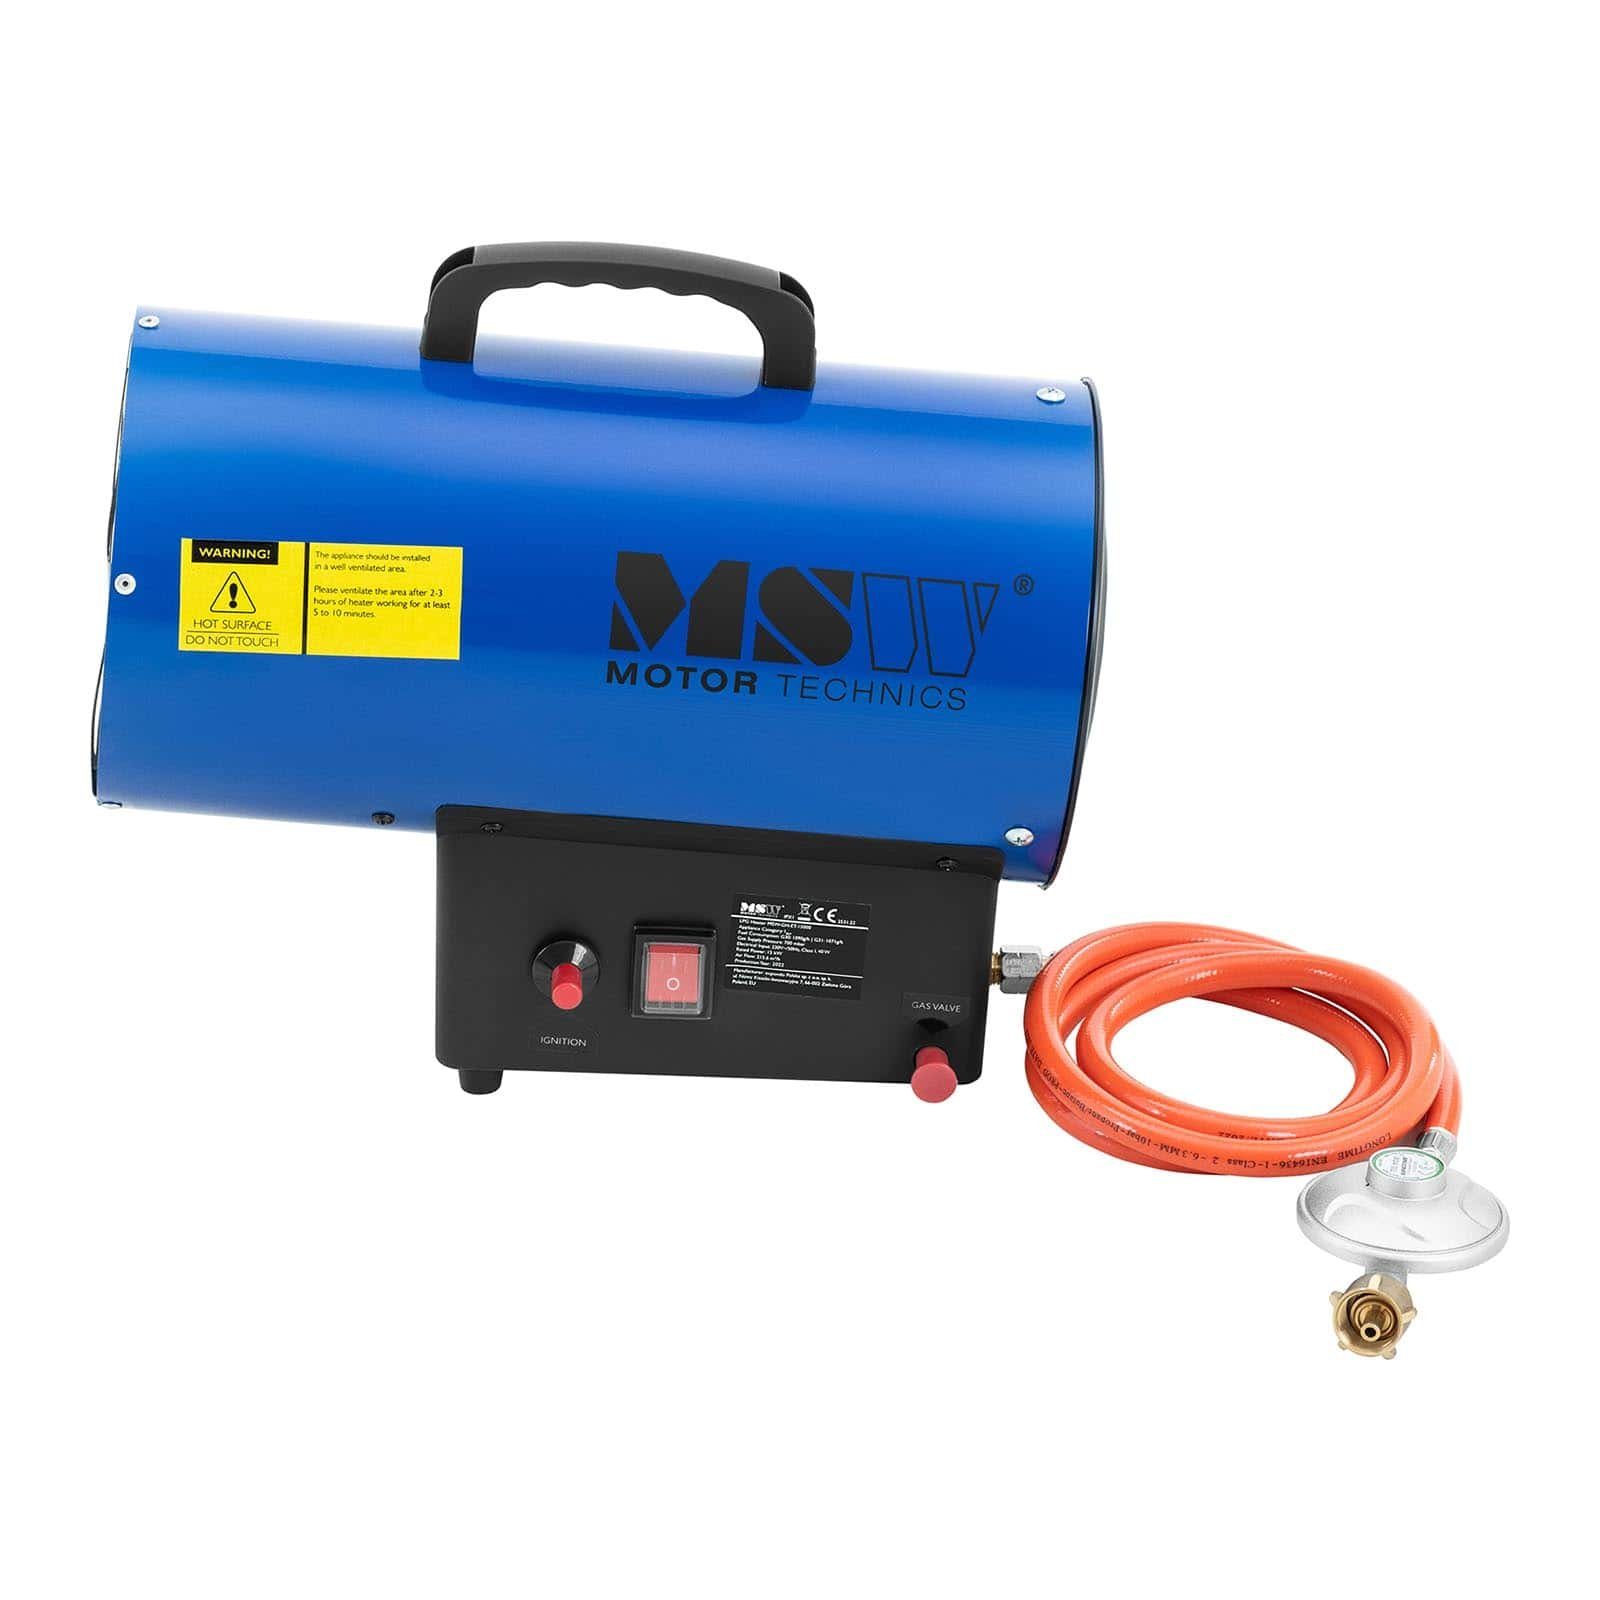 MSW 15000 manuelle Heizgebläse Heizgerät Gaskanone Gas Zündung Gasstrahler Gasheizer